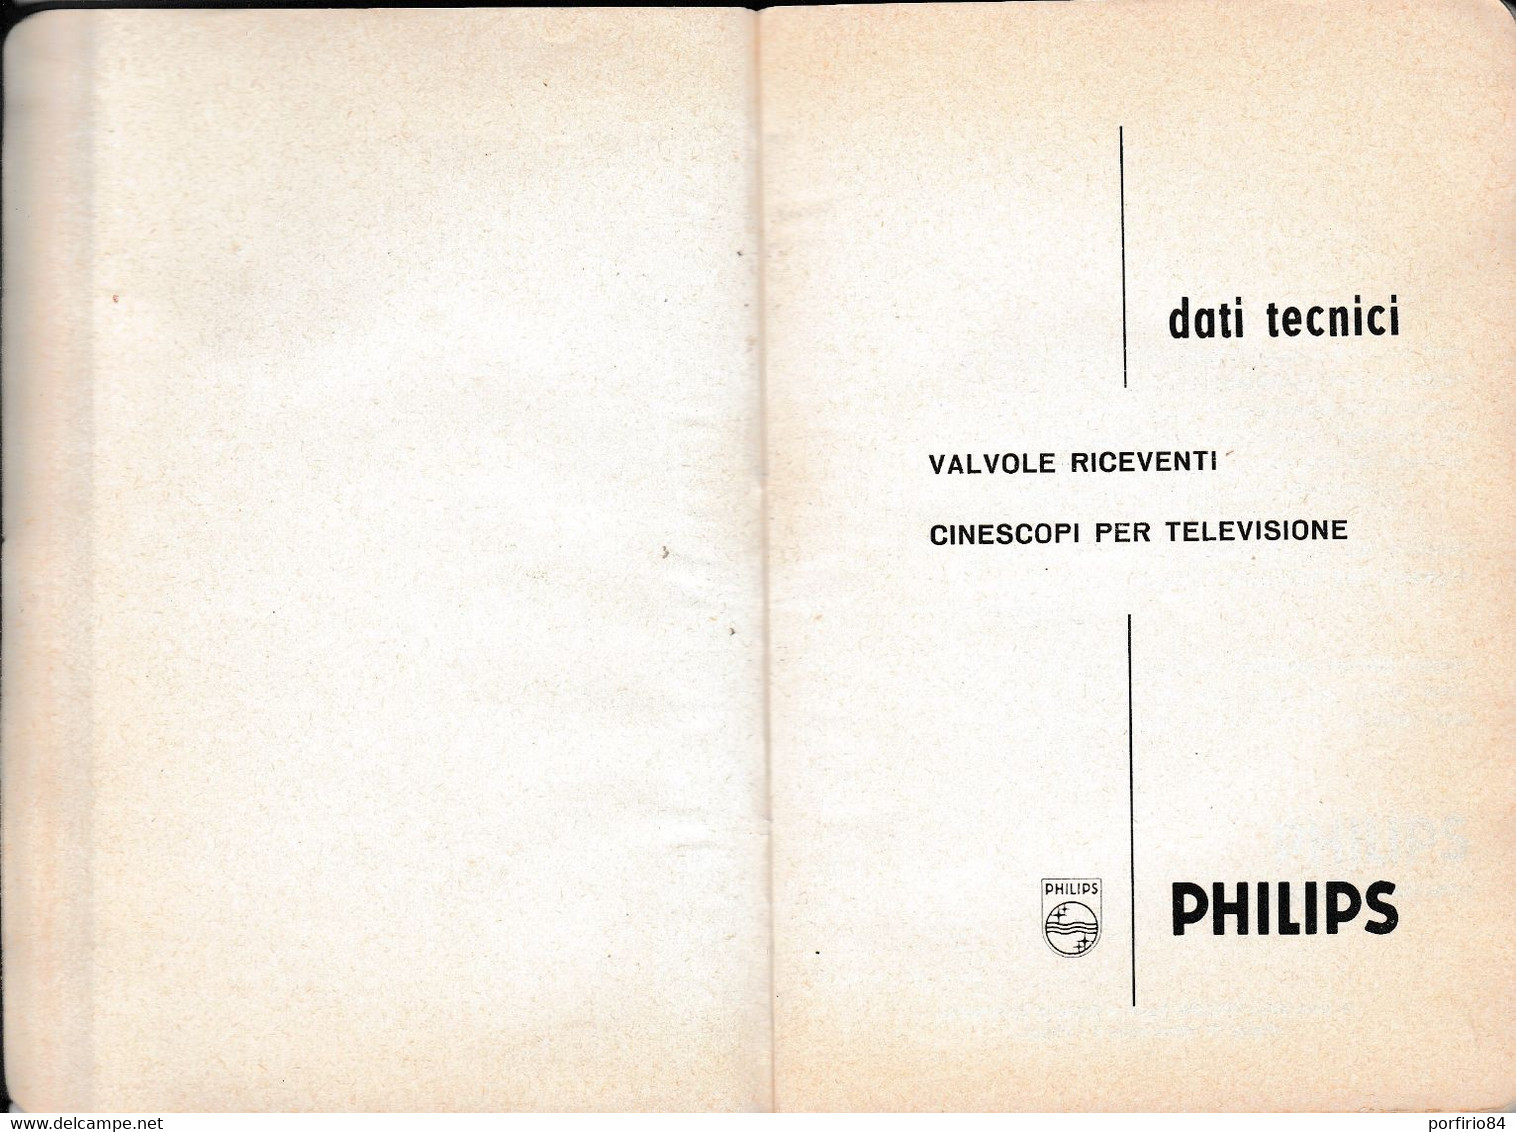 VALVOLE RICEVENTI CINESCOPI PER TELEVISIONE PHILIPS /DATI TECNICI_CATALOGO 1962 - Cinema Y Música